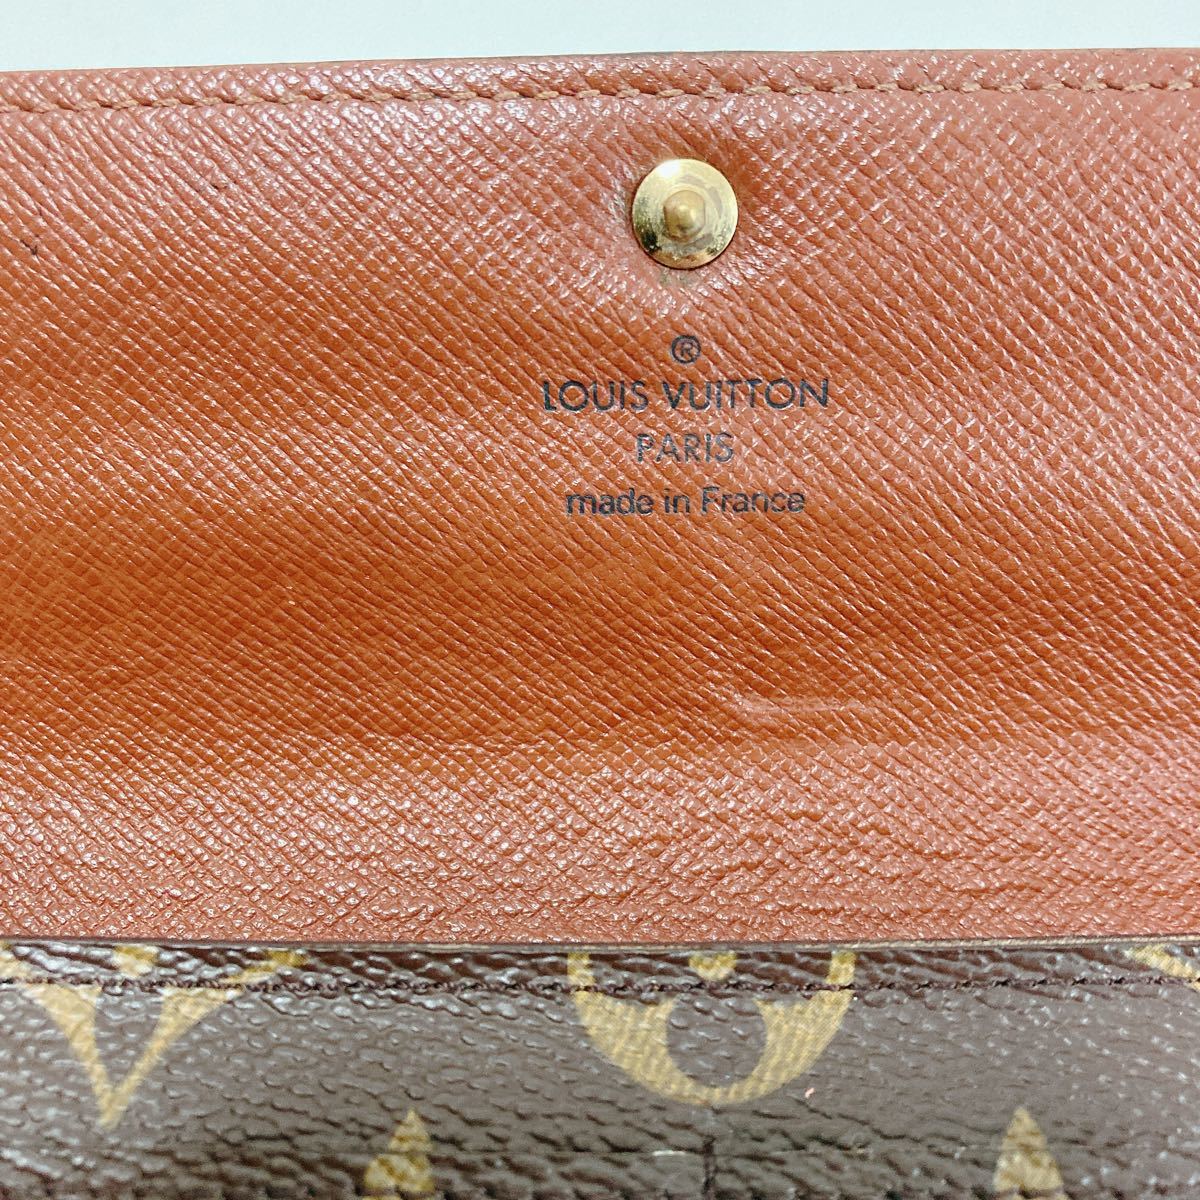 Louis Vuitton Sarah wallet monogram CT0026